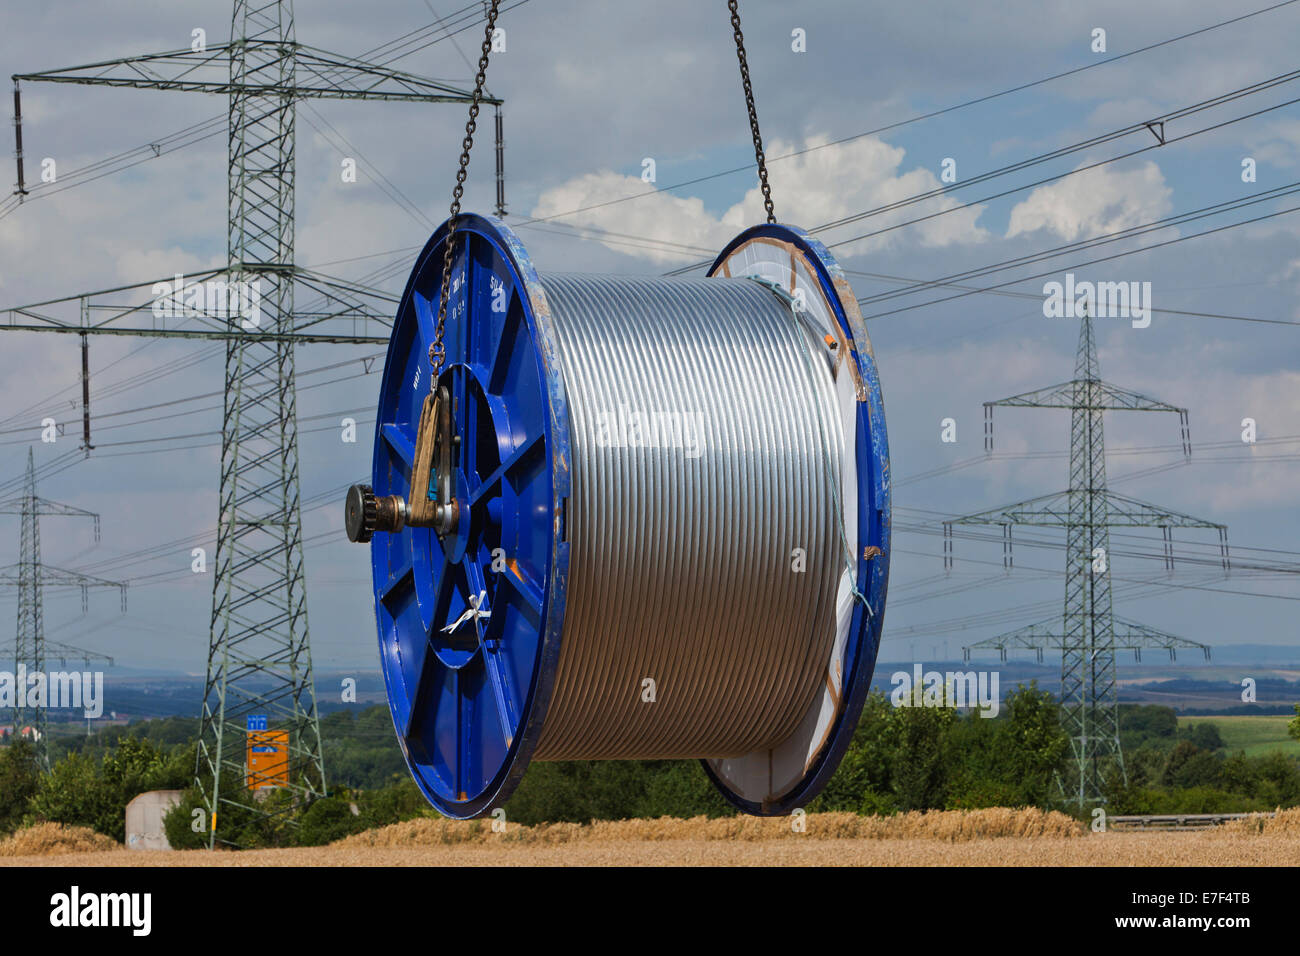 Chargement d'un rouleau de câble conducteur après le travail sur un mât de transmission à haute tension, Mönchenholzhausen, Thuringe, Allemagne Banque D'Images